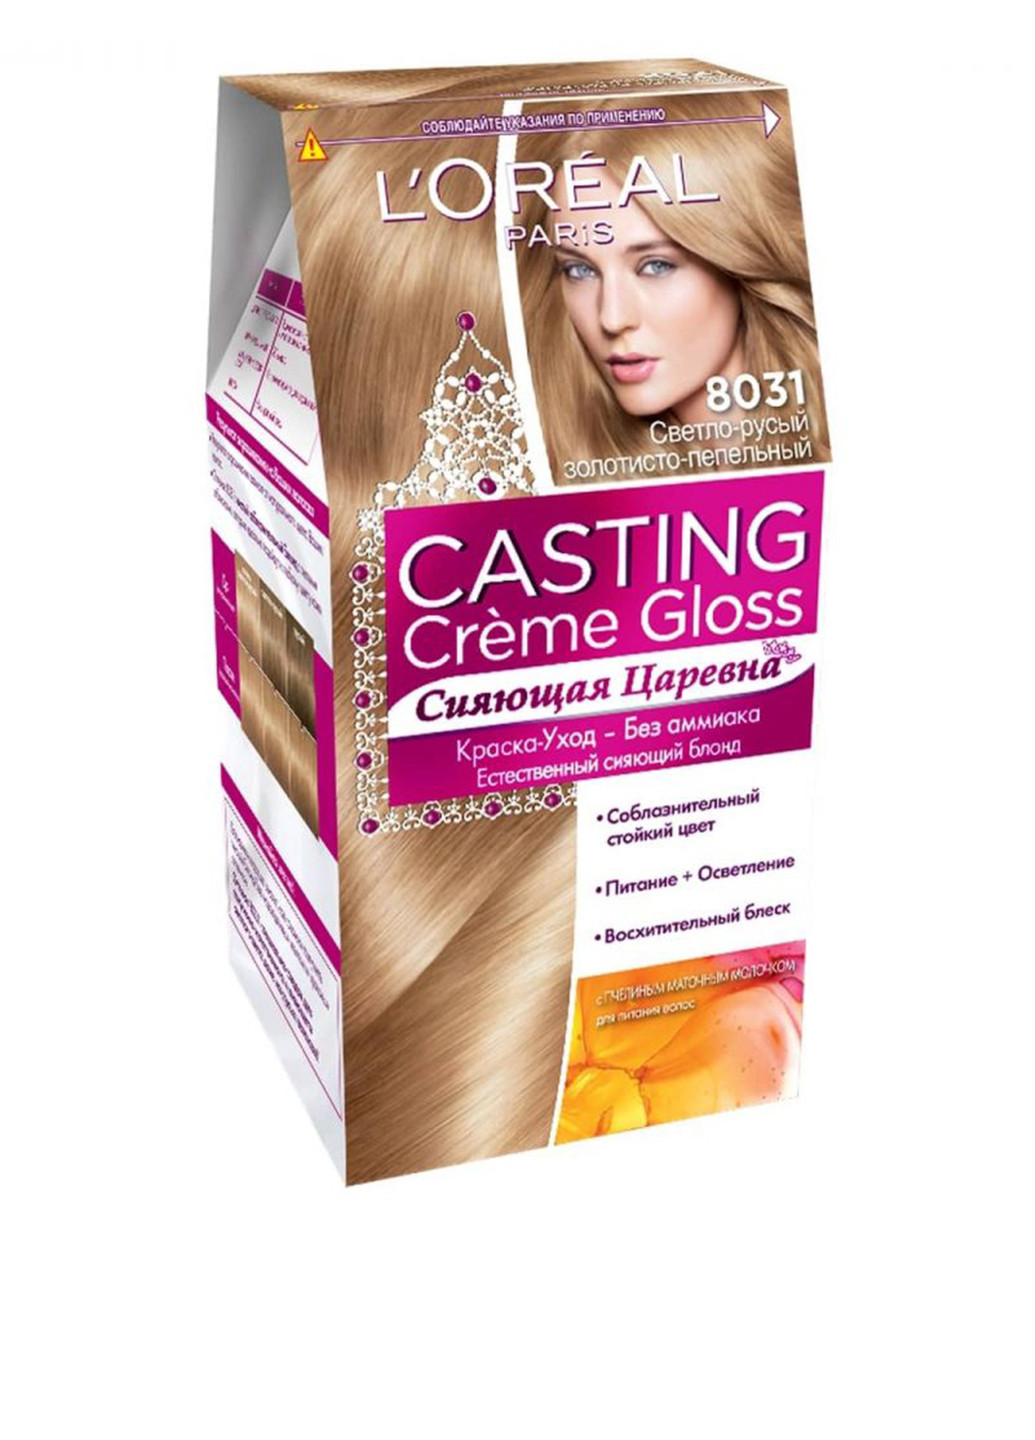 Краска для волос L'oreal Casting Creme Gloss 8031 Светло-русый золотисто-пепельный L'Oreal Paris (88091907)